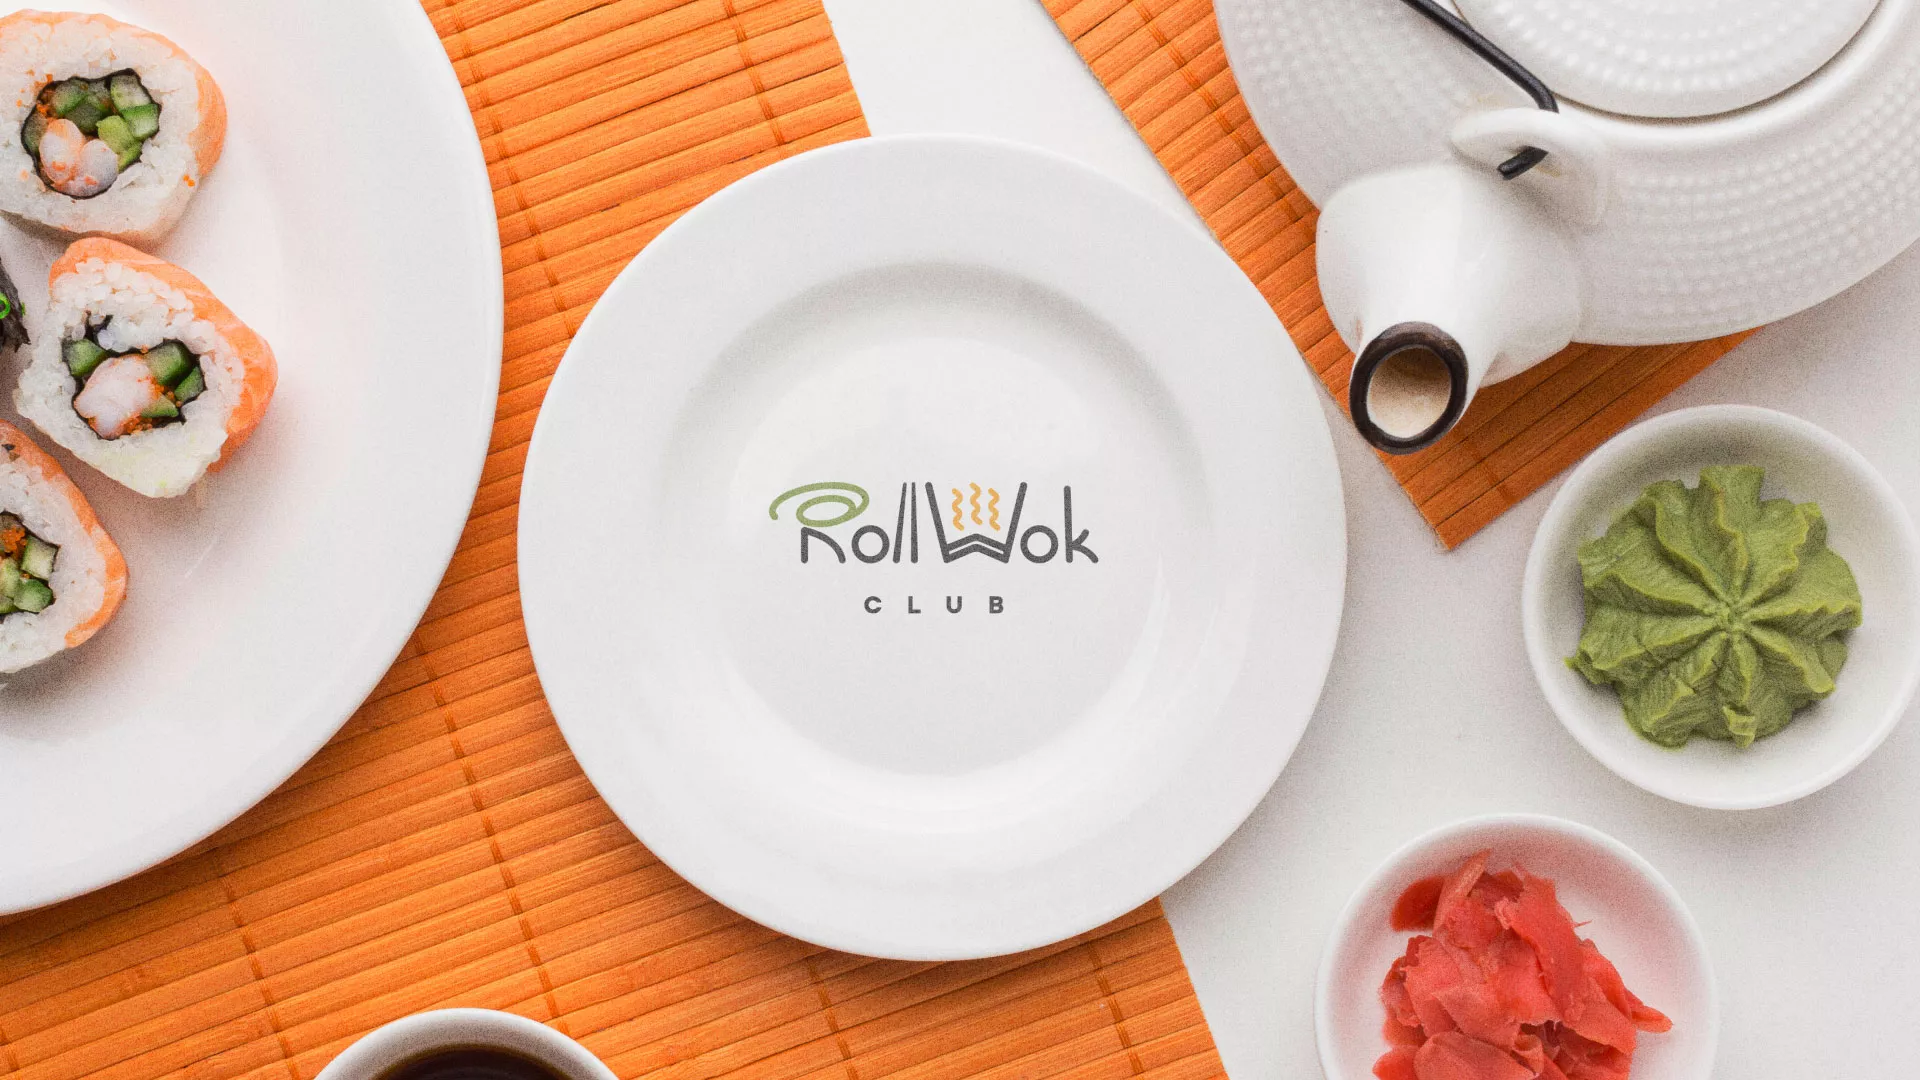 Разработка логотипа и фирменного стиля суши-бара «Roll Wok Club» в Махачкале